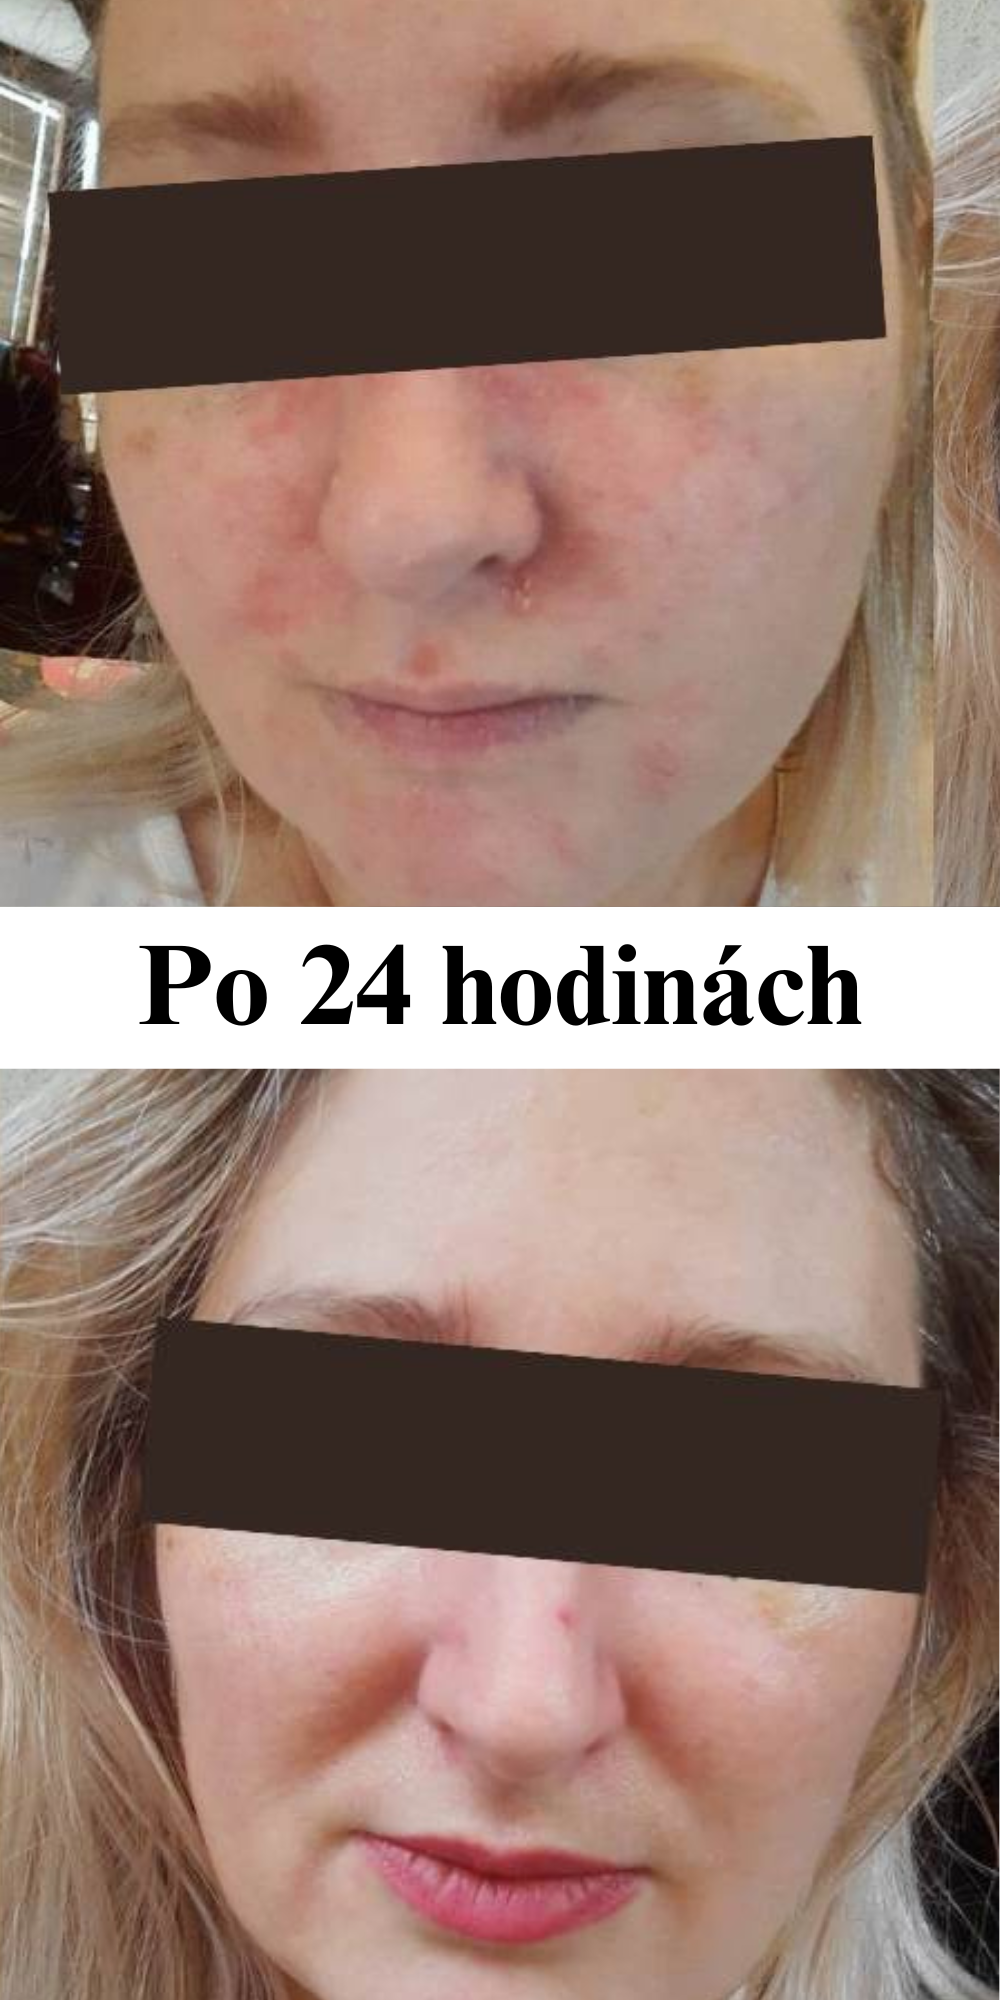 Účinky prírodnej kozmetiky Barbora Lori, pred a po, zmena už po 24 hodinách, kožné problémy